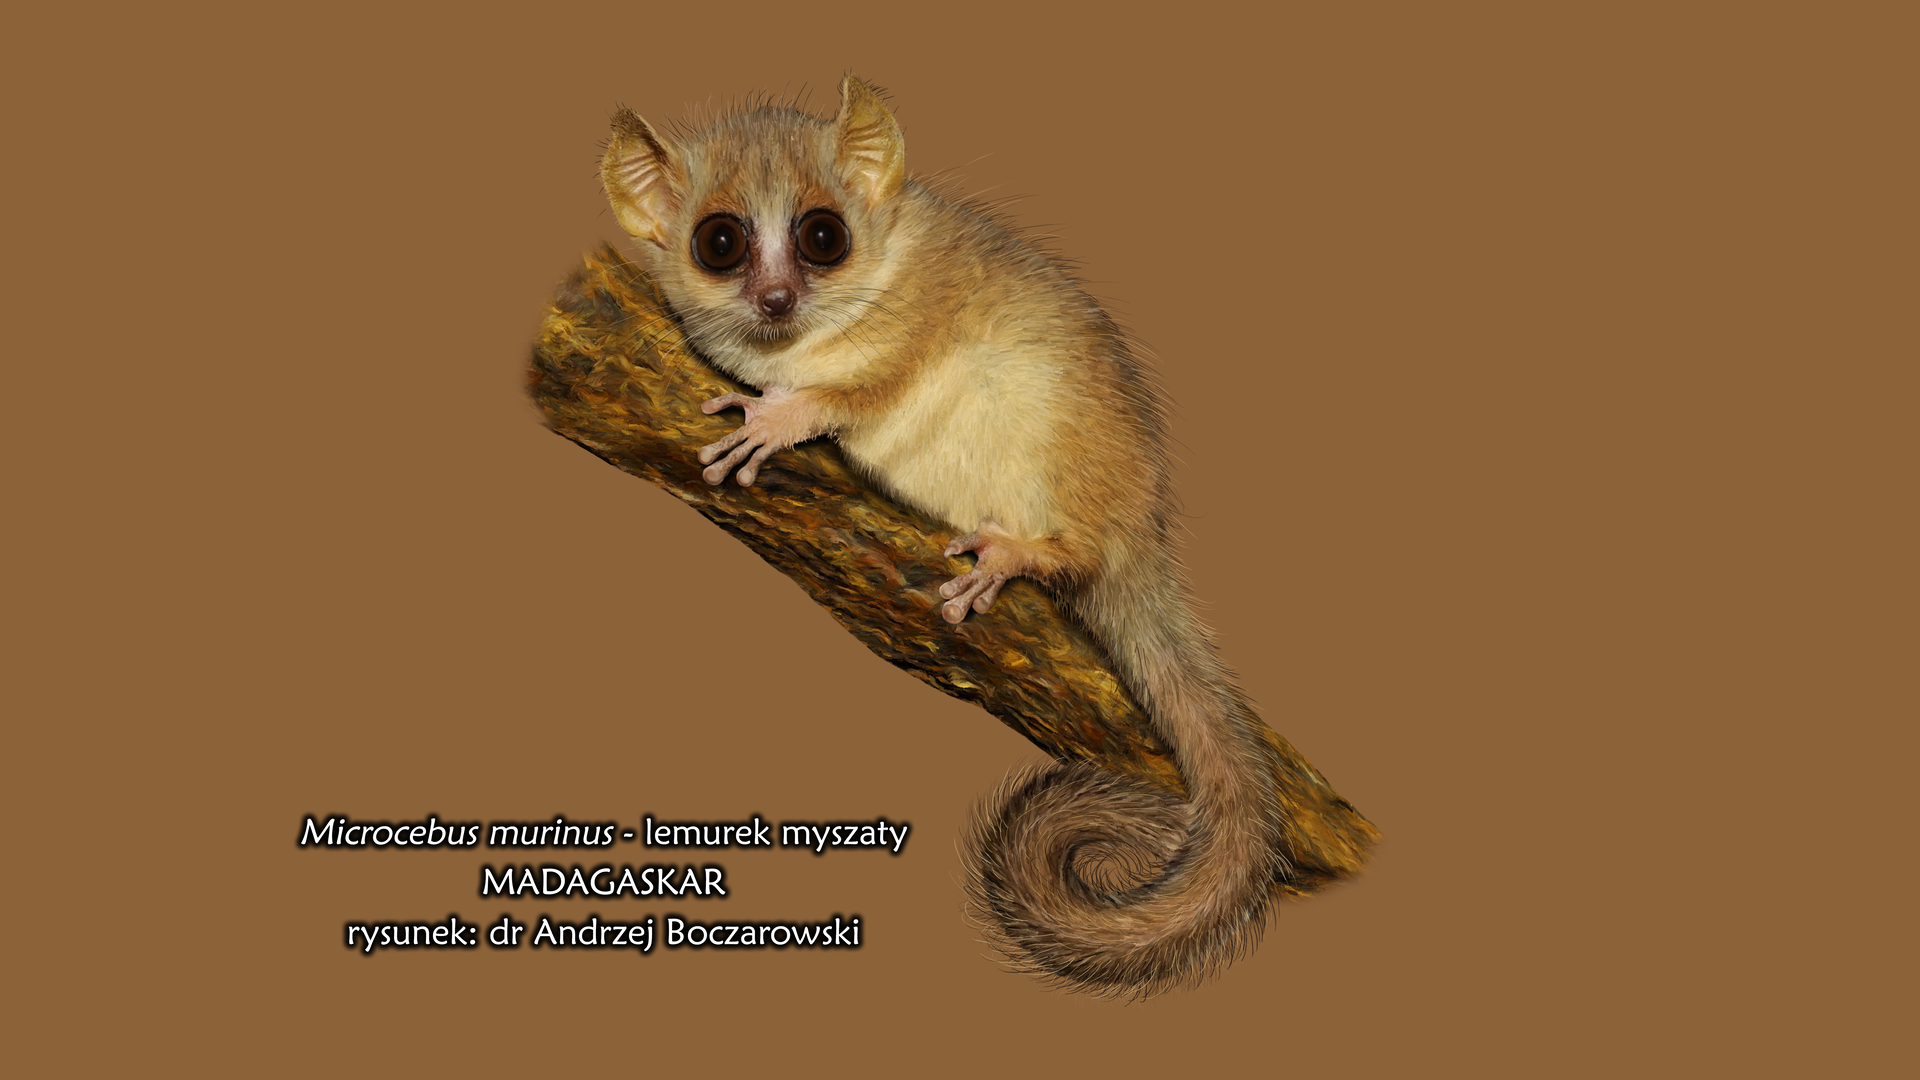 Fotografia lemurka myszatego siedzącego na pniu. Lemurek ma duże oczy, długi ogon i jasnobrązowe umaszczenie.